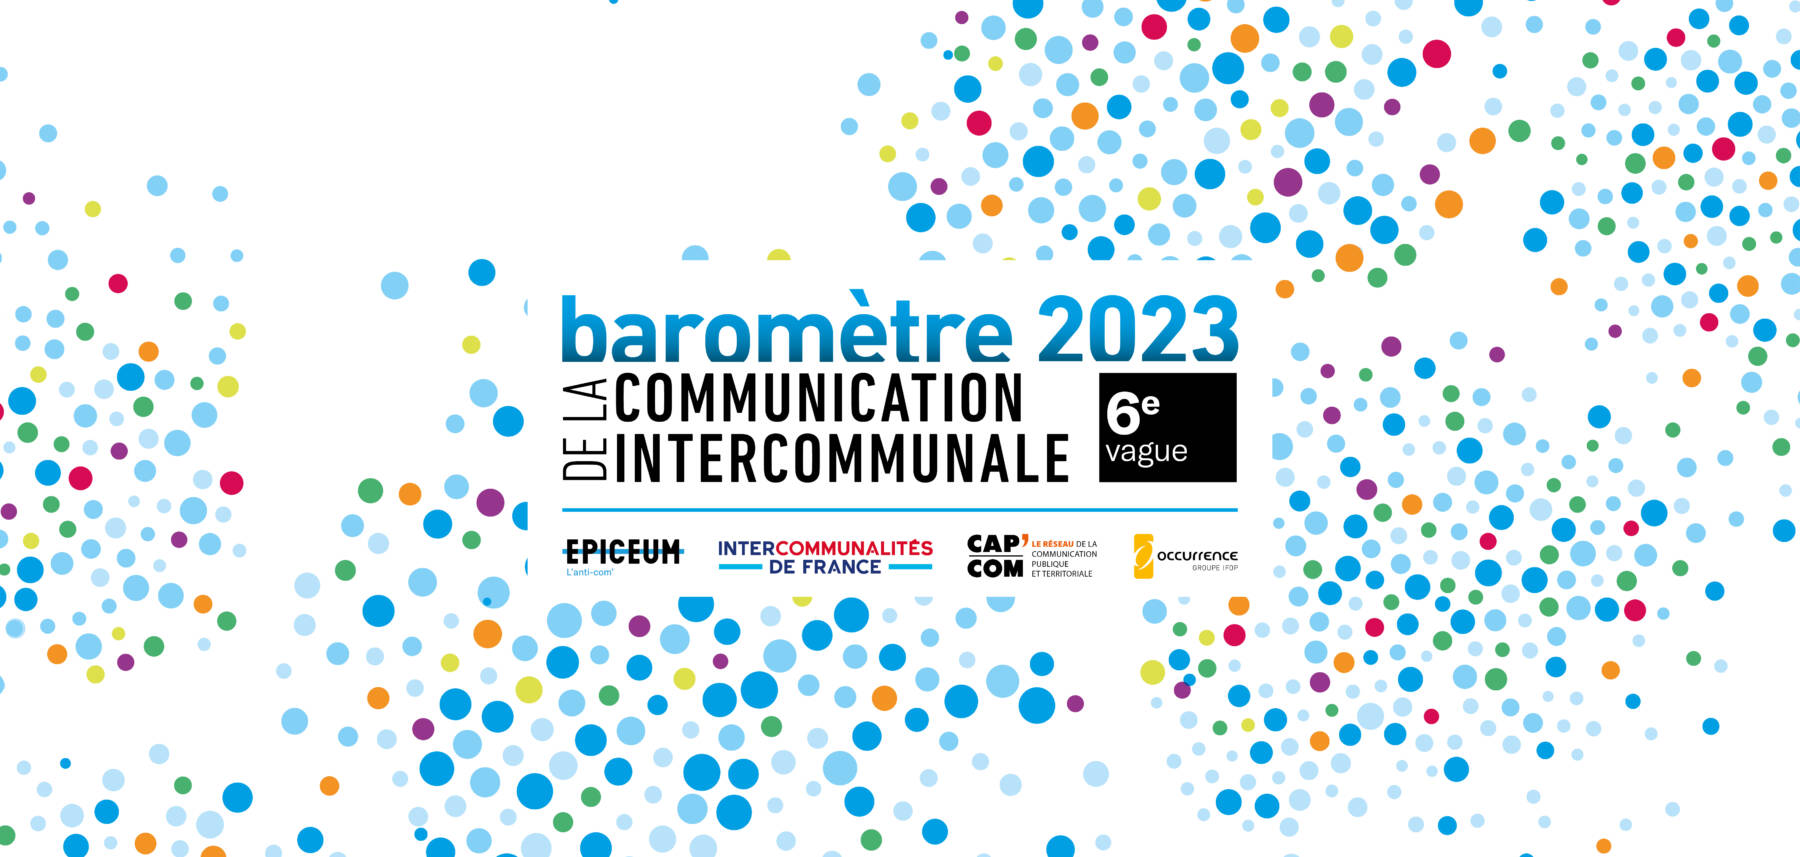 Barometre Communication Intercommunale 2023